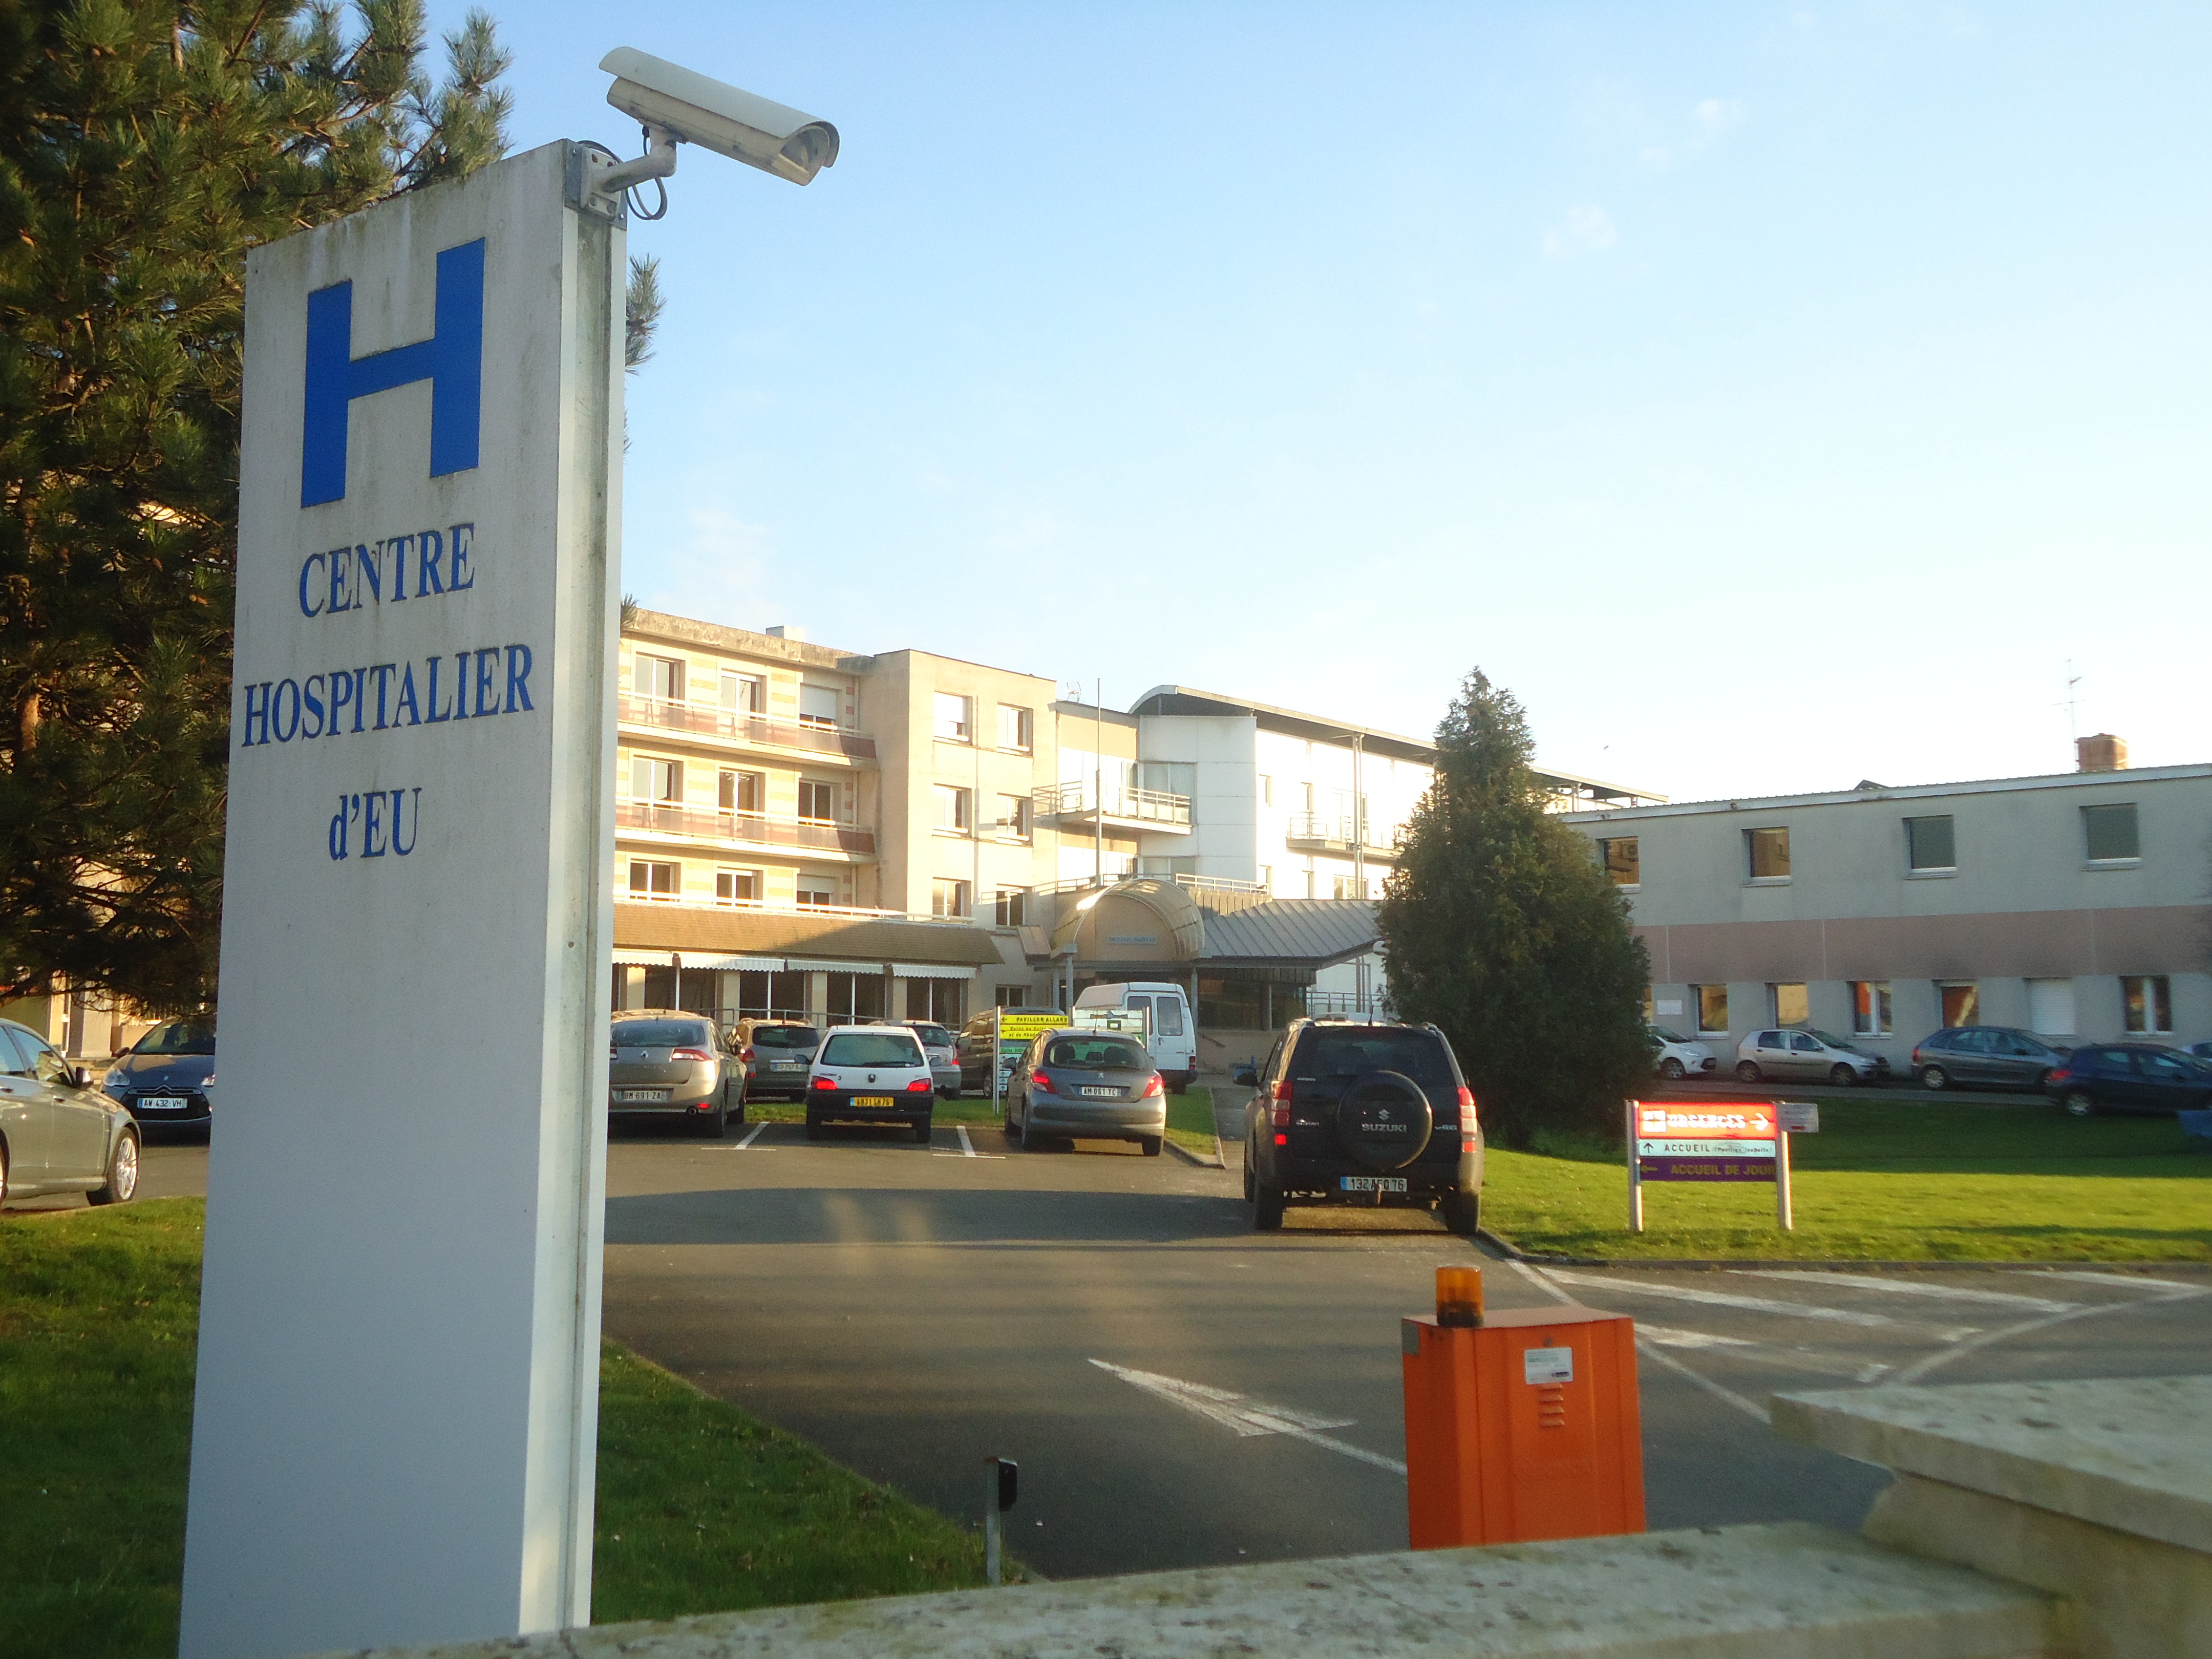 Centre hospitalier  (Eu)